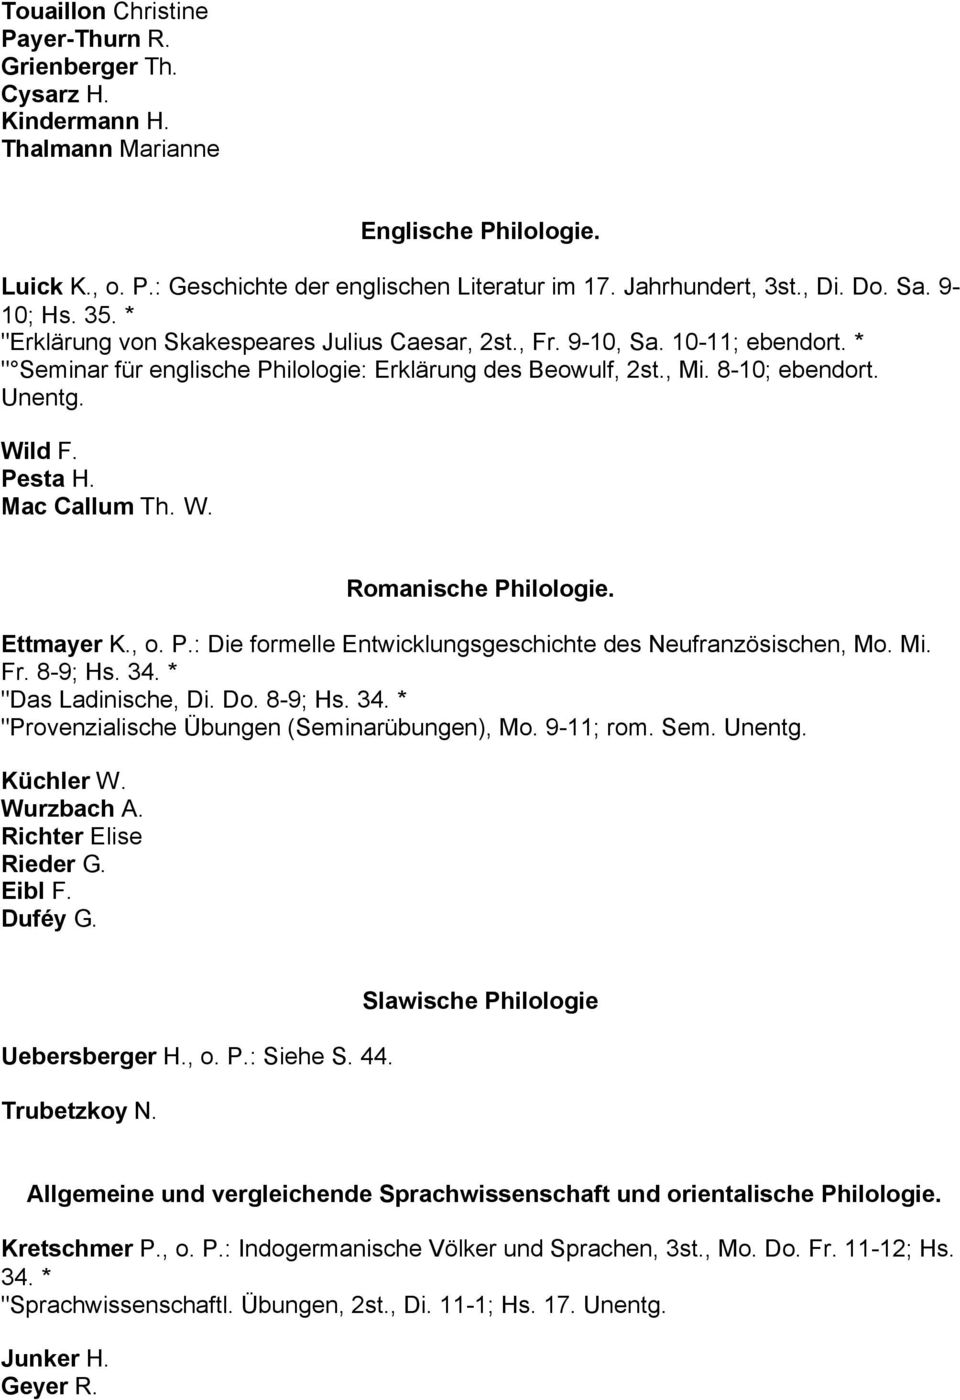 Wild F. Pesta H. Mac Callum Th. W. Romanische Philologie. Ettmayer K., o. P.: Die formelle Entwicklungsgeschichte des Neufranzösischen, Mo. Mi. Fr. 8-9; Hs. 34.